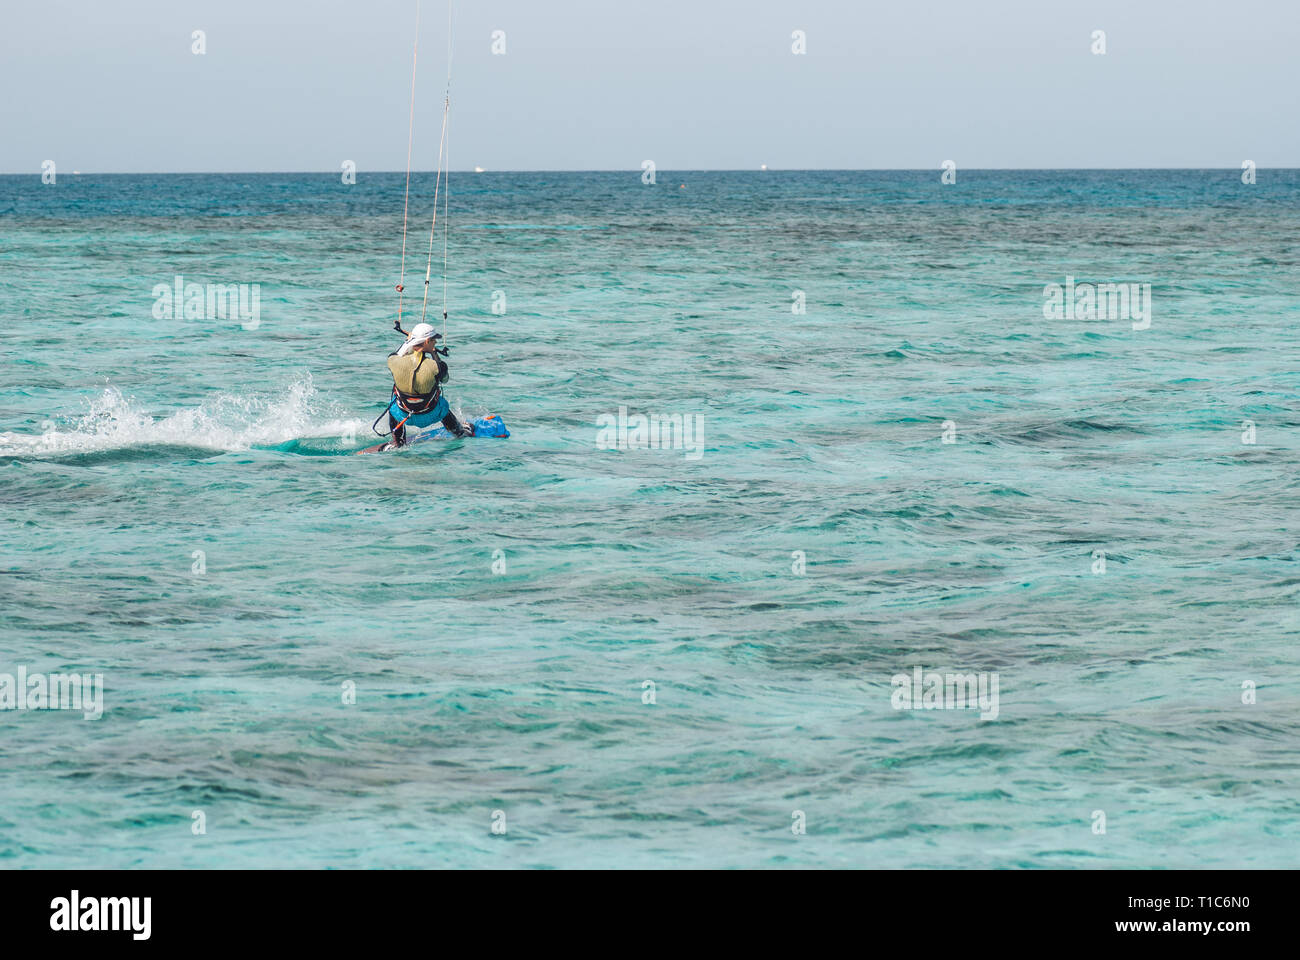 Professionelle kiter die Wasseroberfläche im Ozean mit großer Geschwindigkeit gleiten. Zurück hinter Totale anzeigen Stockfoto